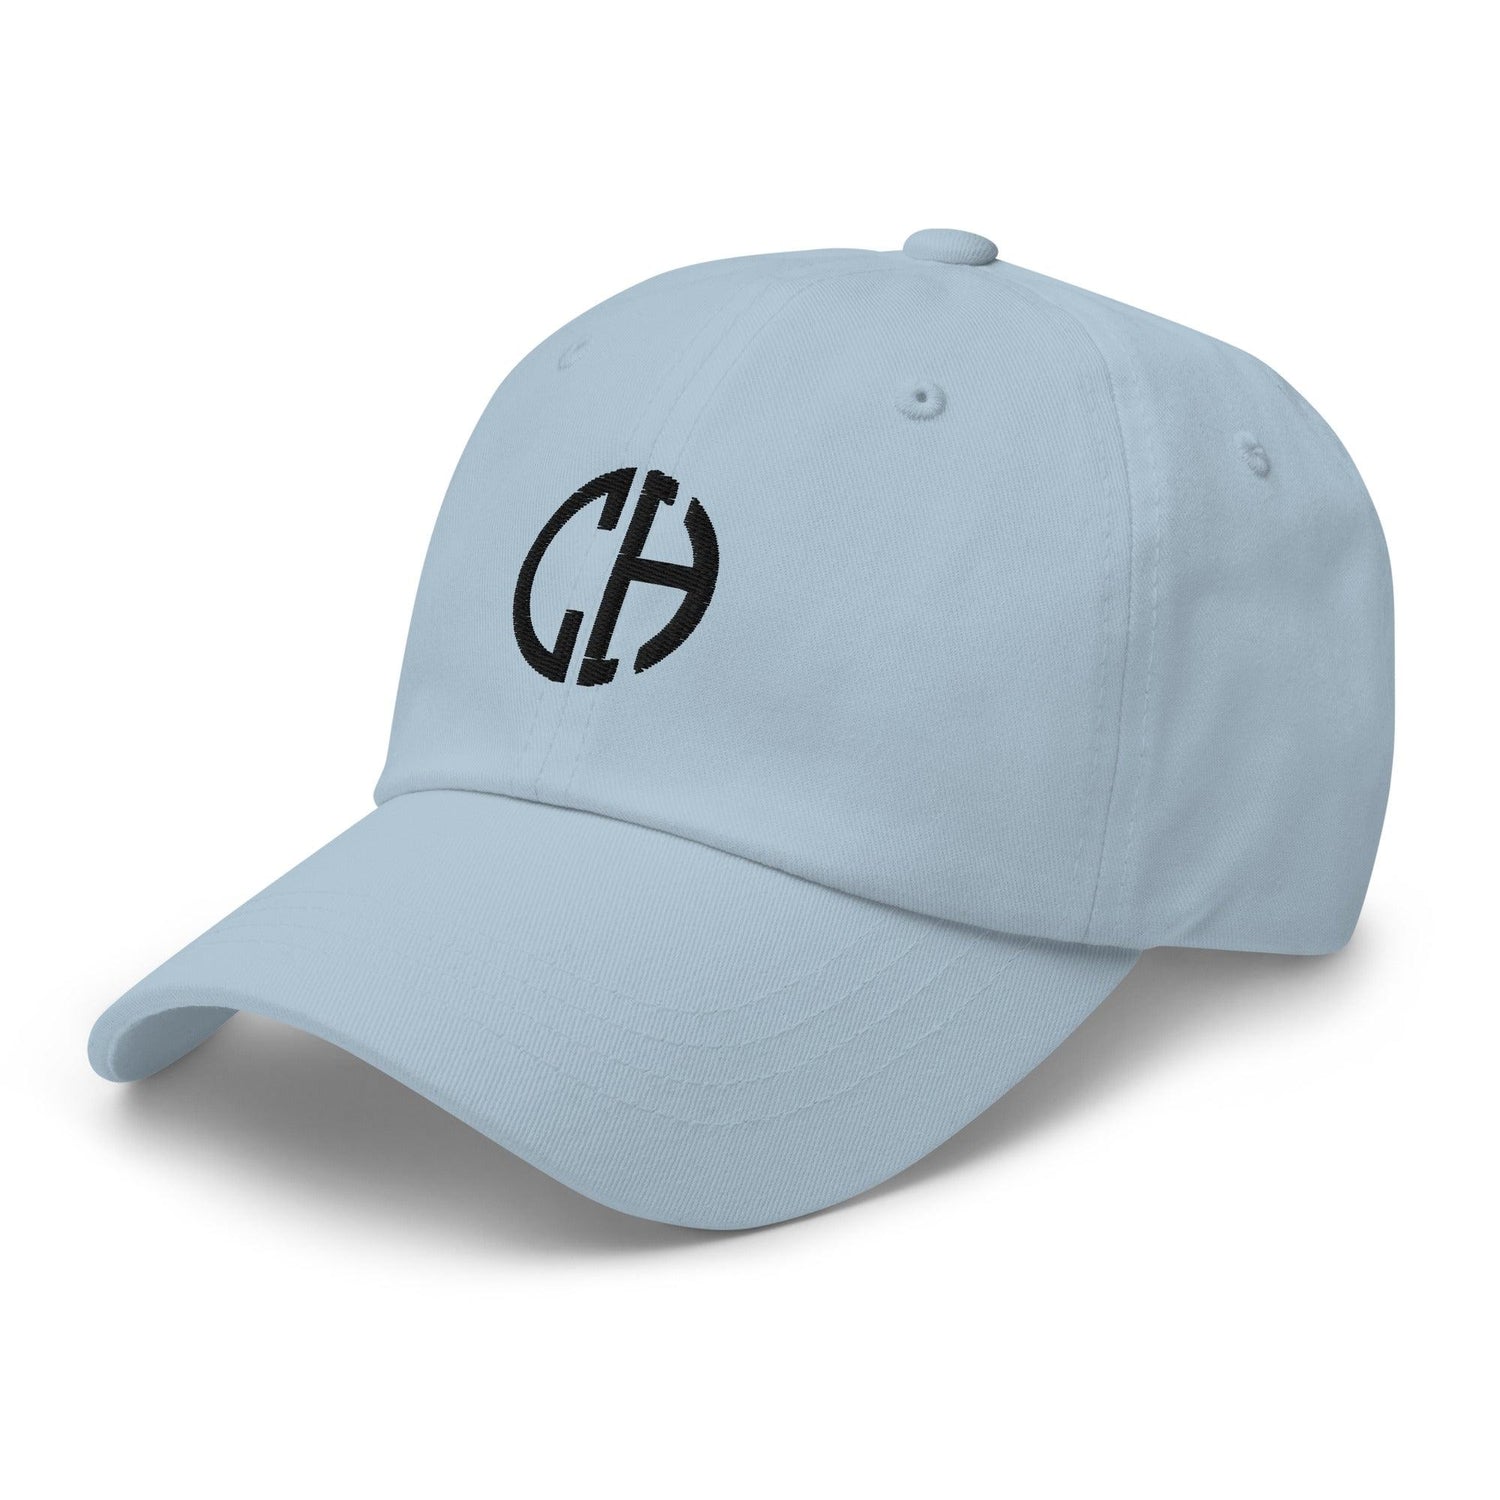 Clay Howard "Elite" hat - Fan Arch